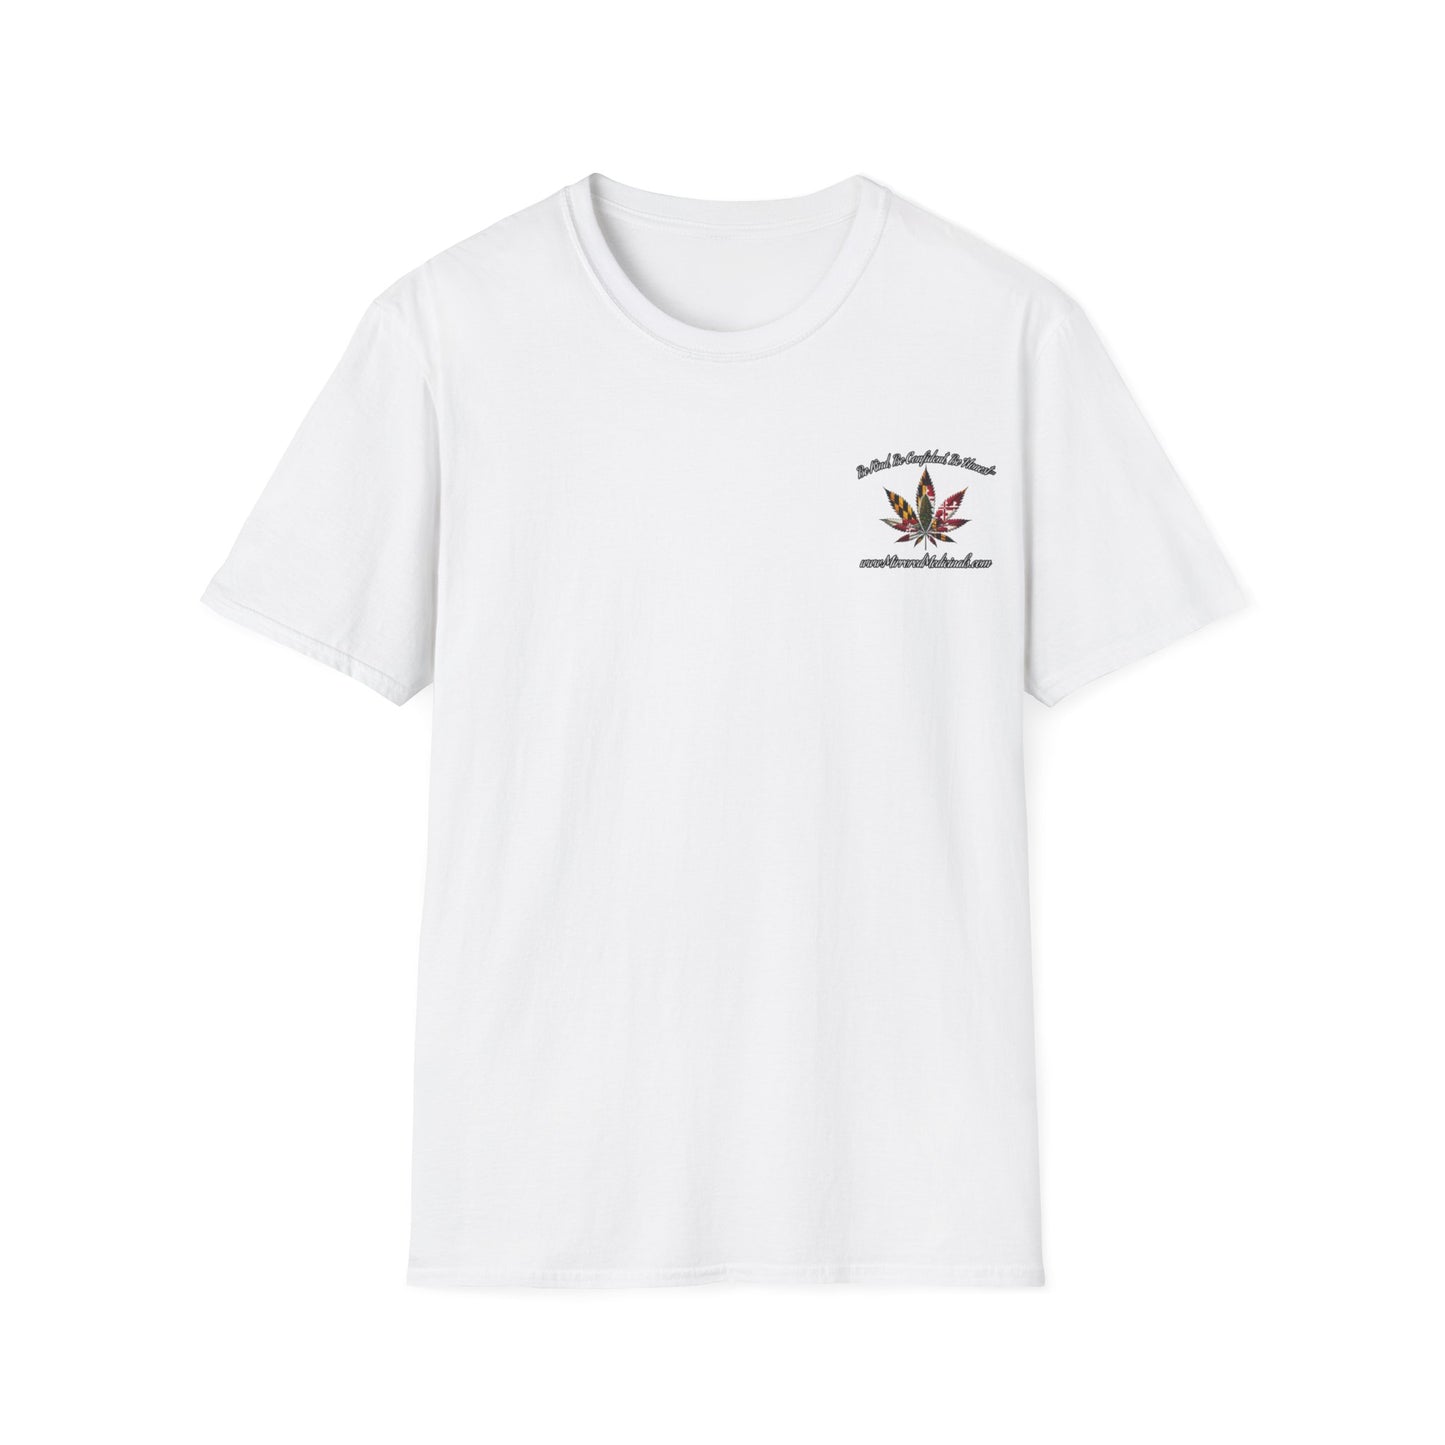 Long Day 9, Zebra 1 - Unisex Softstyle T-Shirt